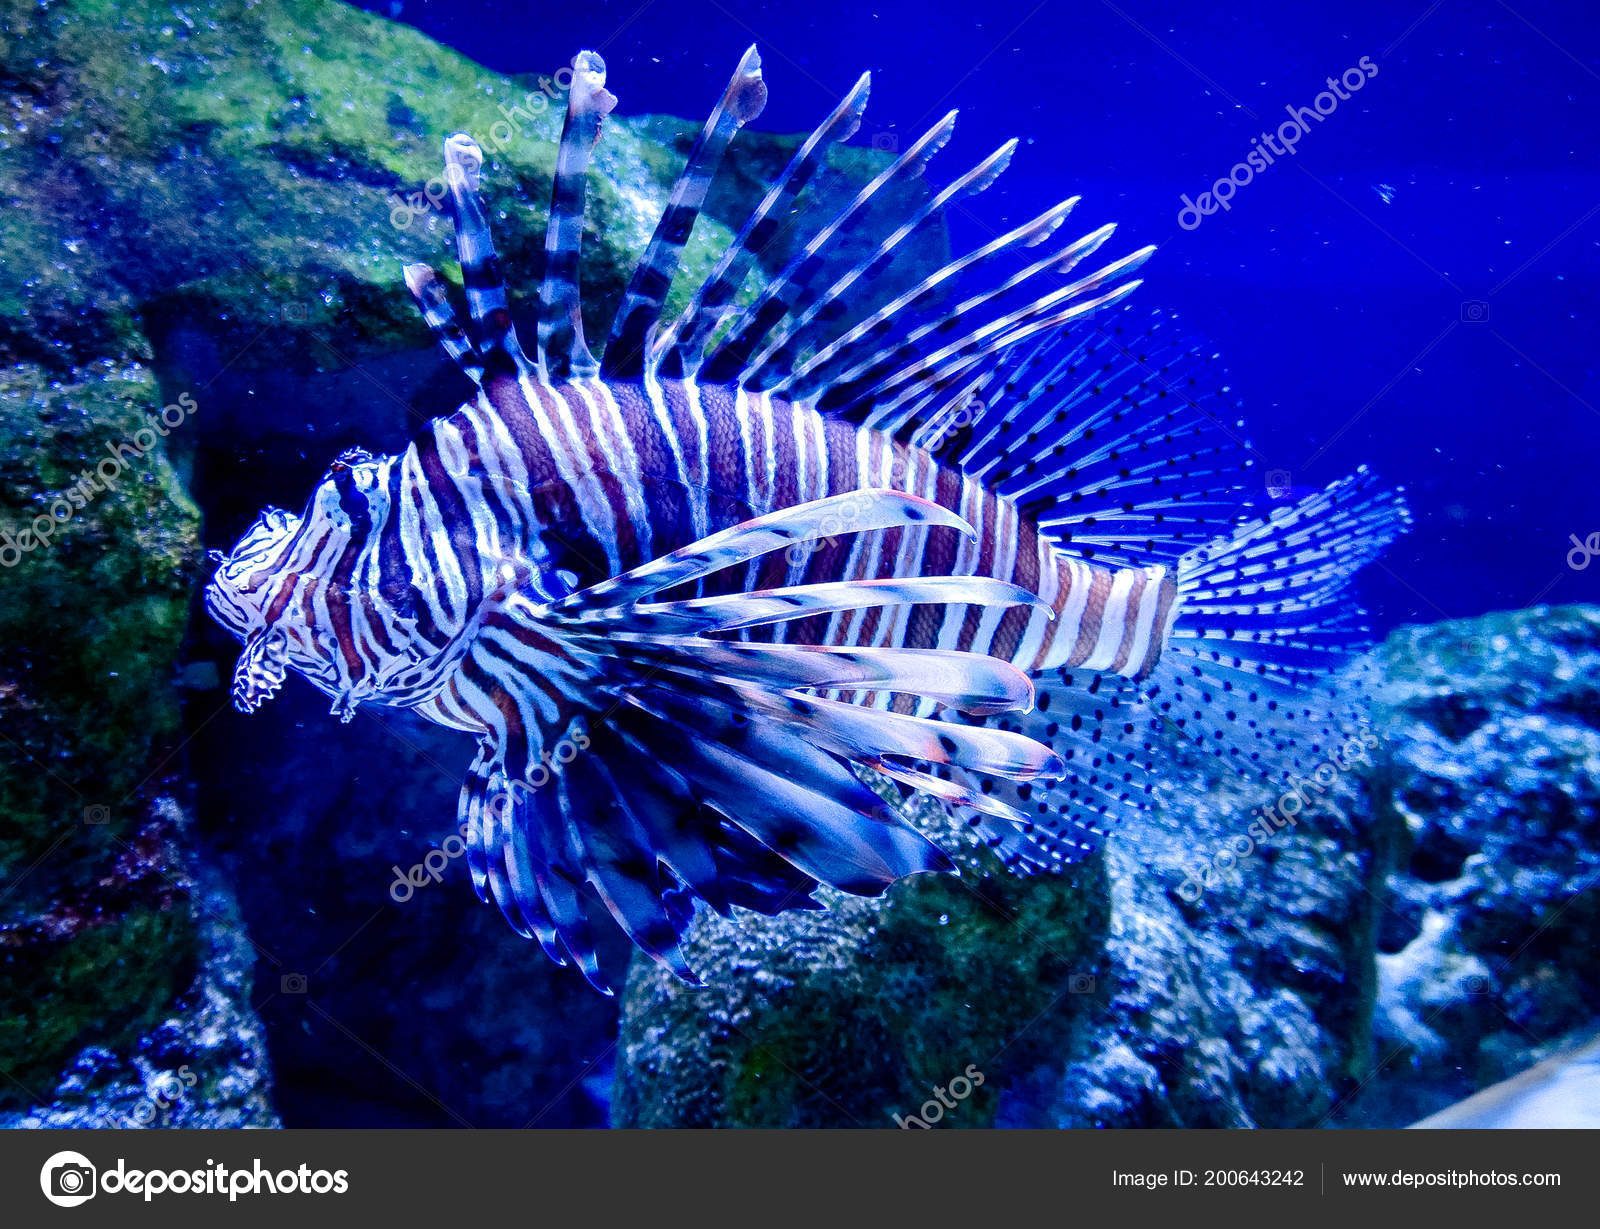 Marine Radiant Poisonous Fish Striped Zebrafish Aquarium Stock Photo C Khalimosha 200643242